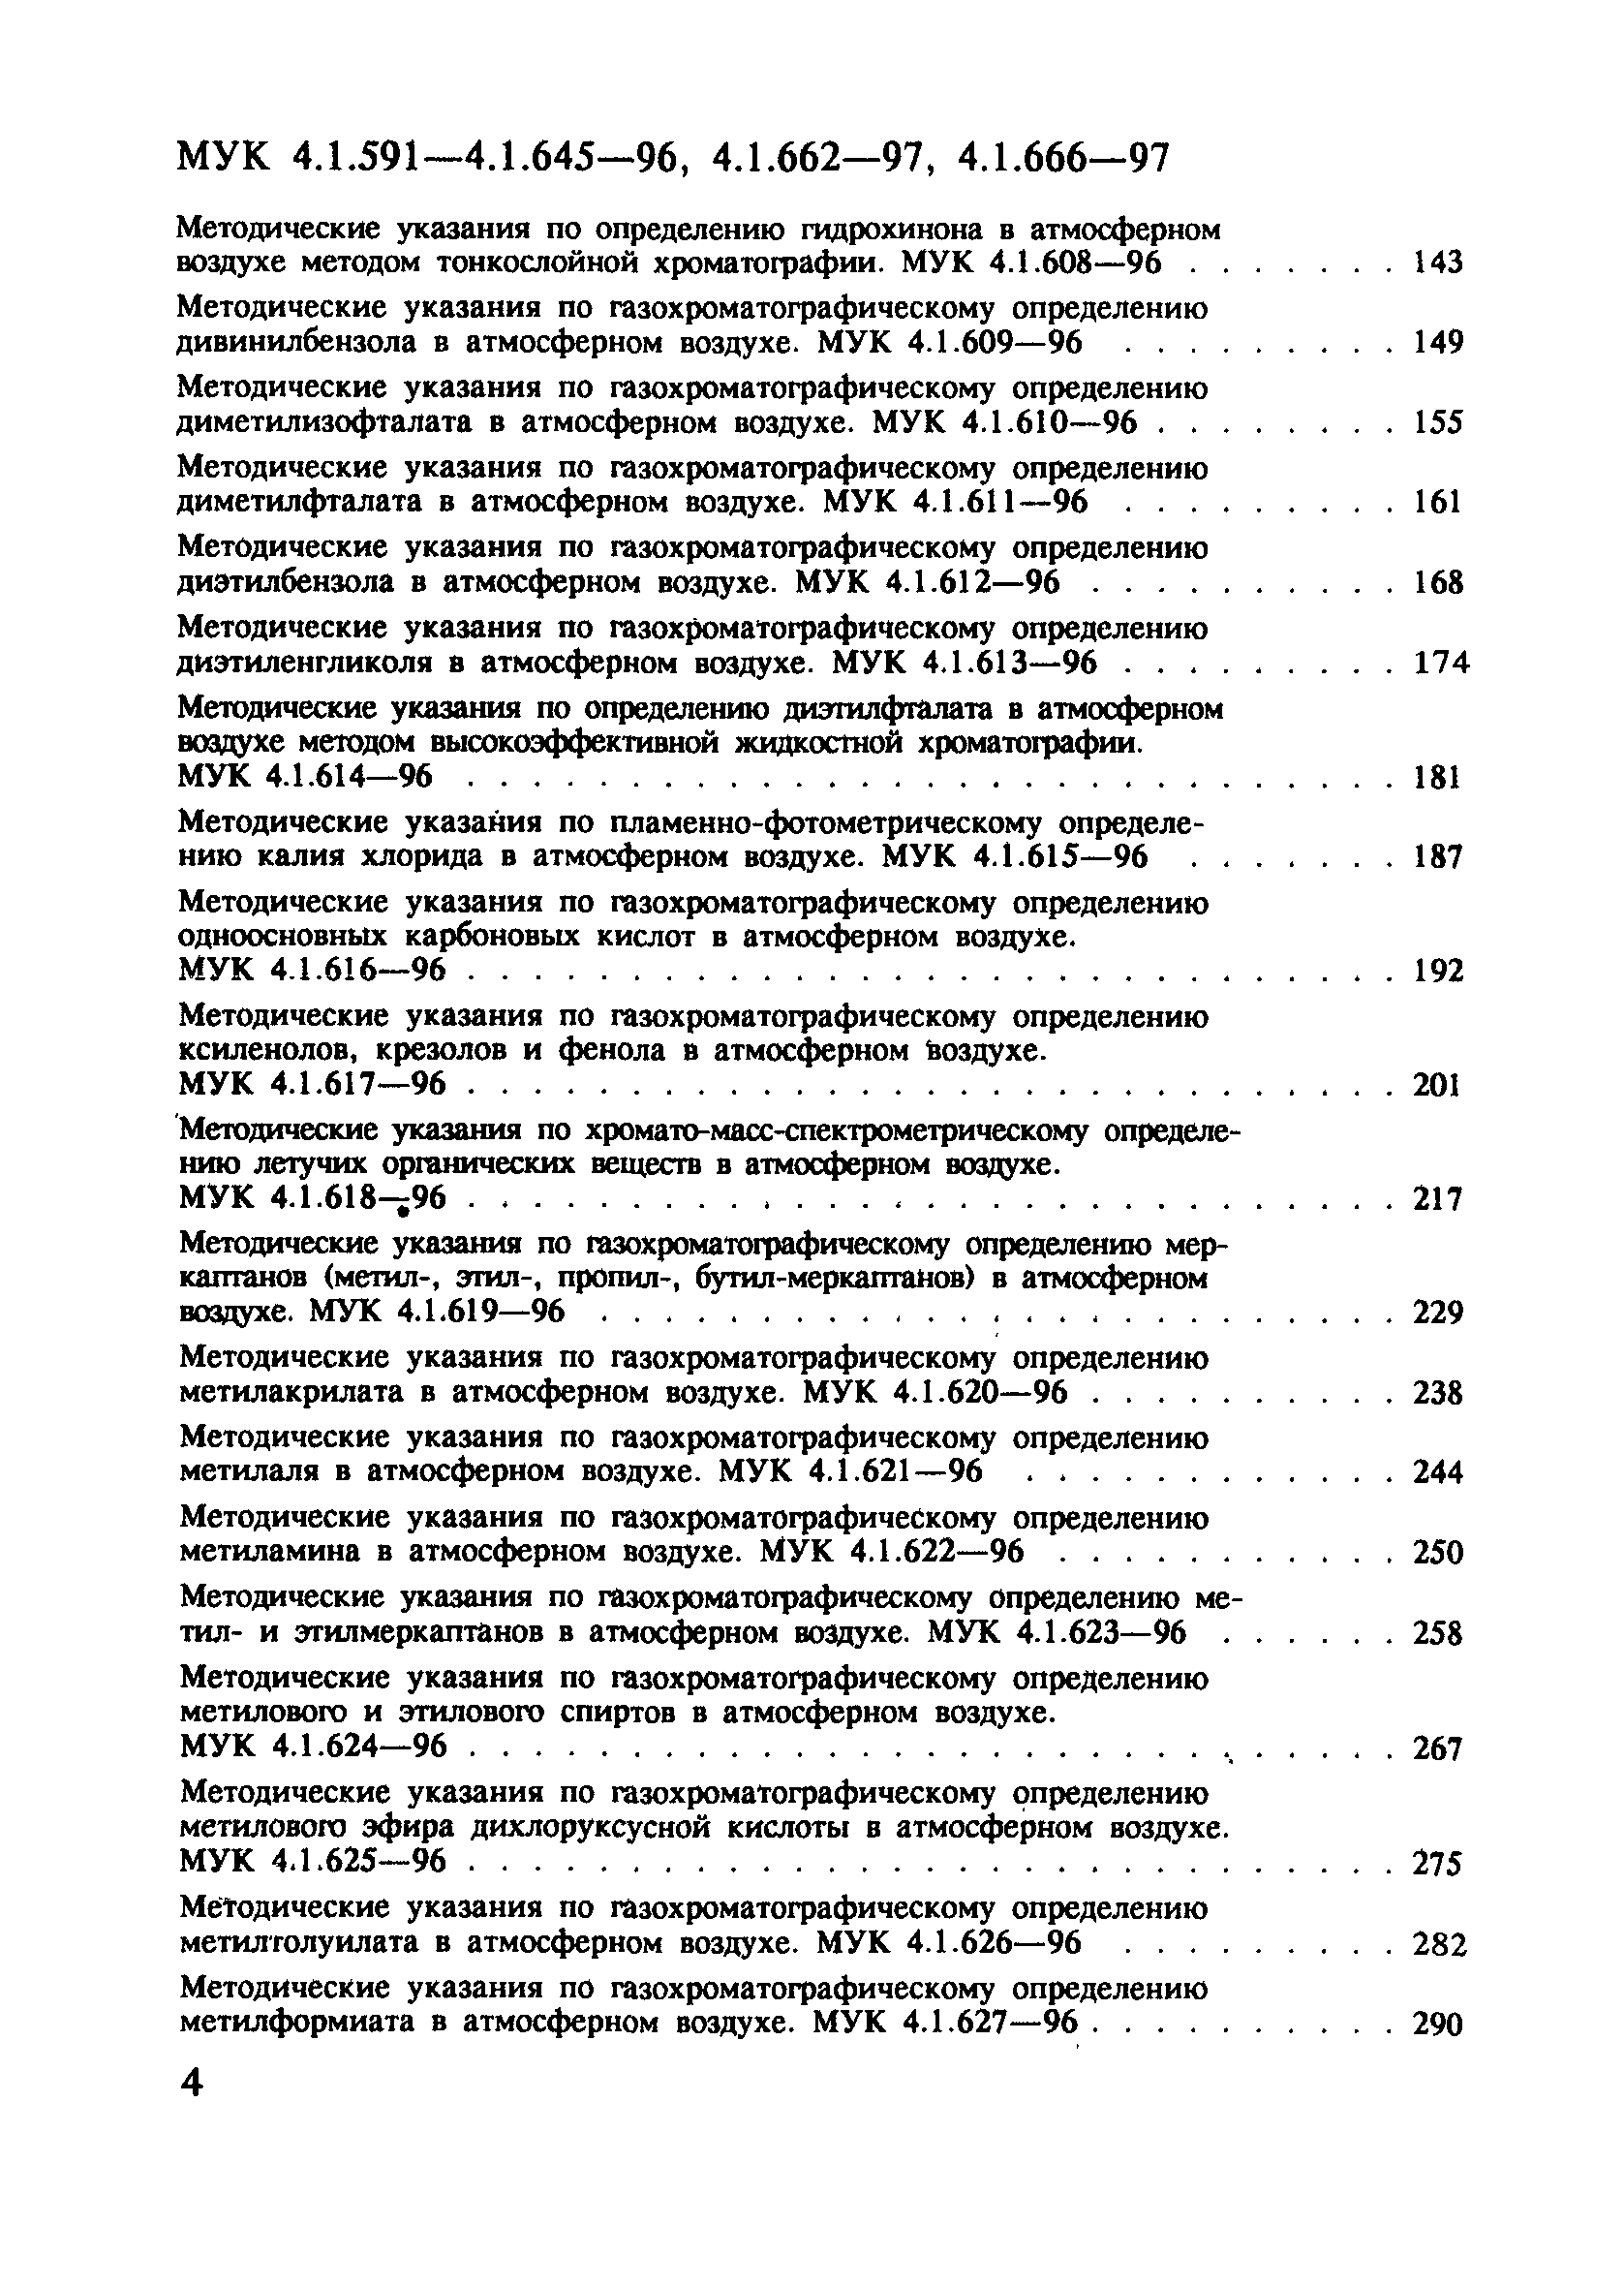 МУК 4.1.628-96